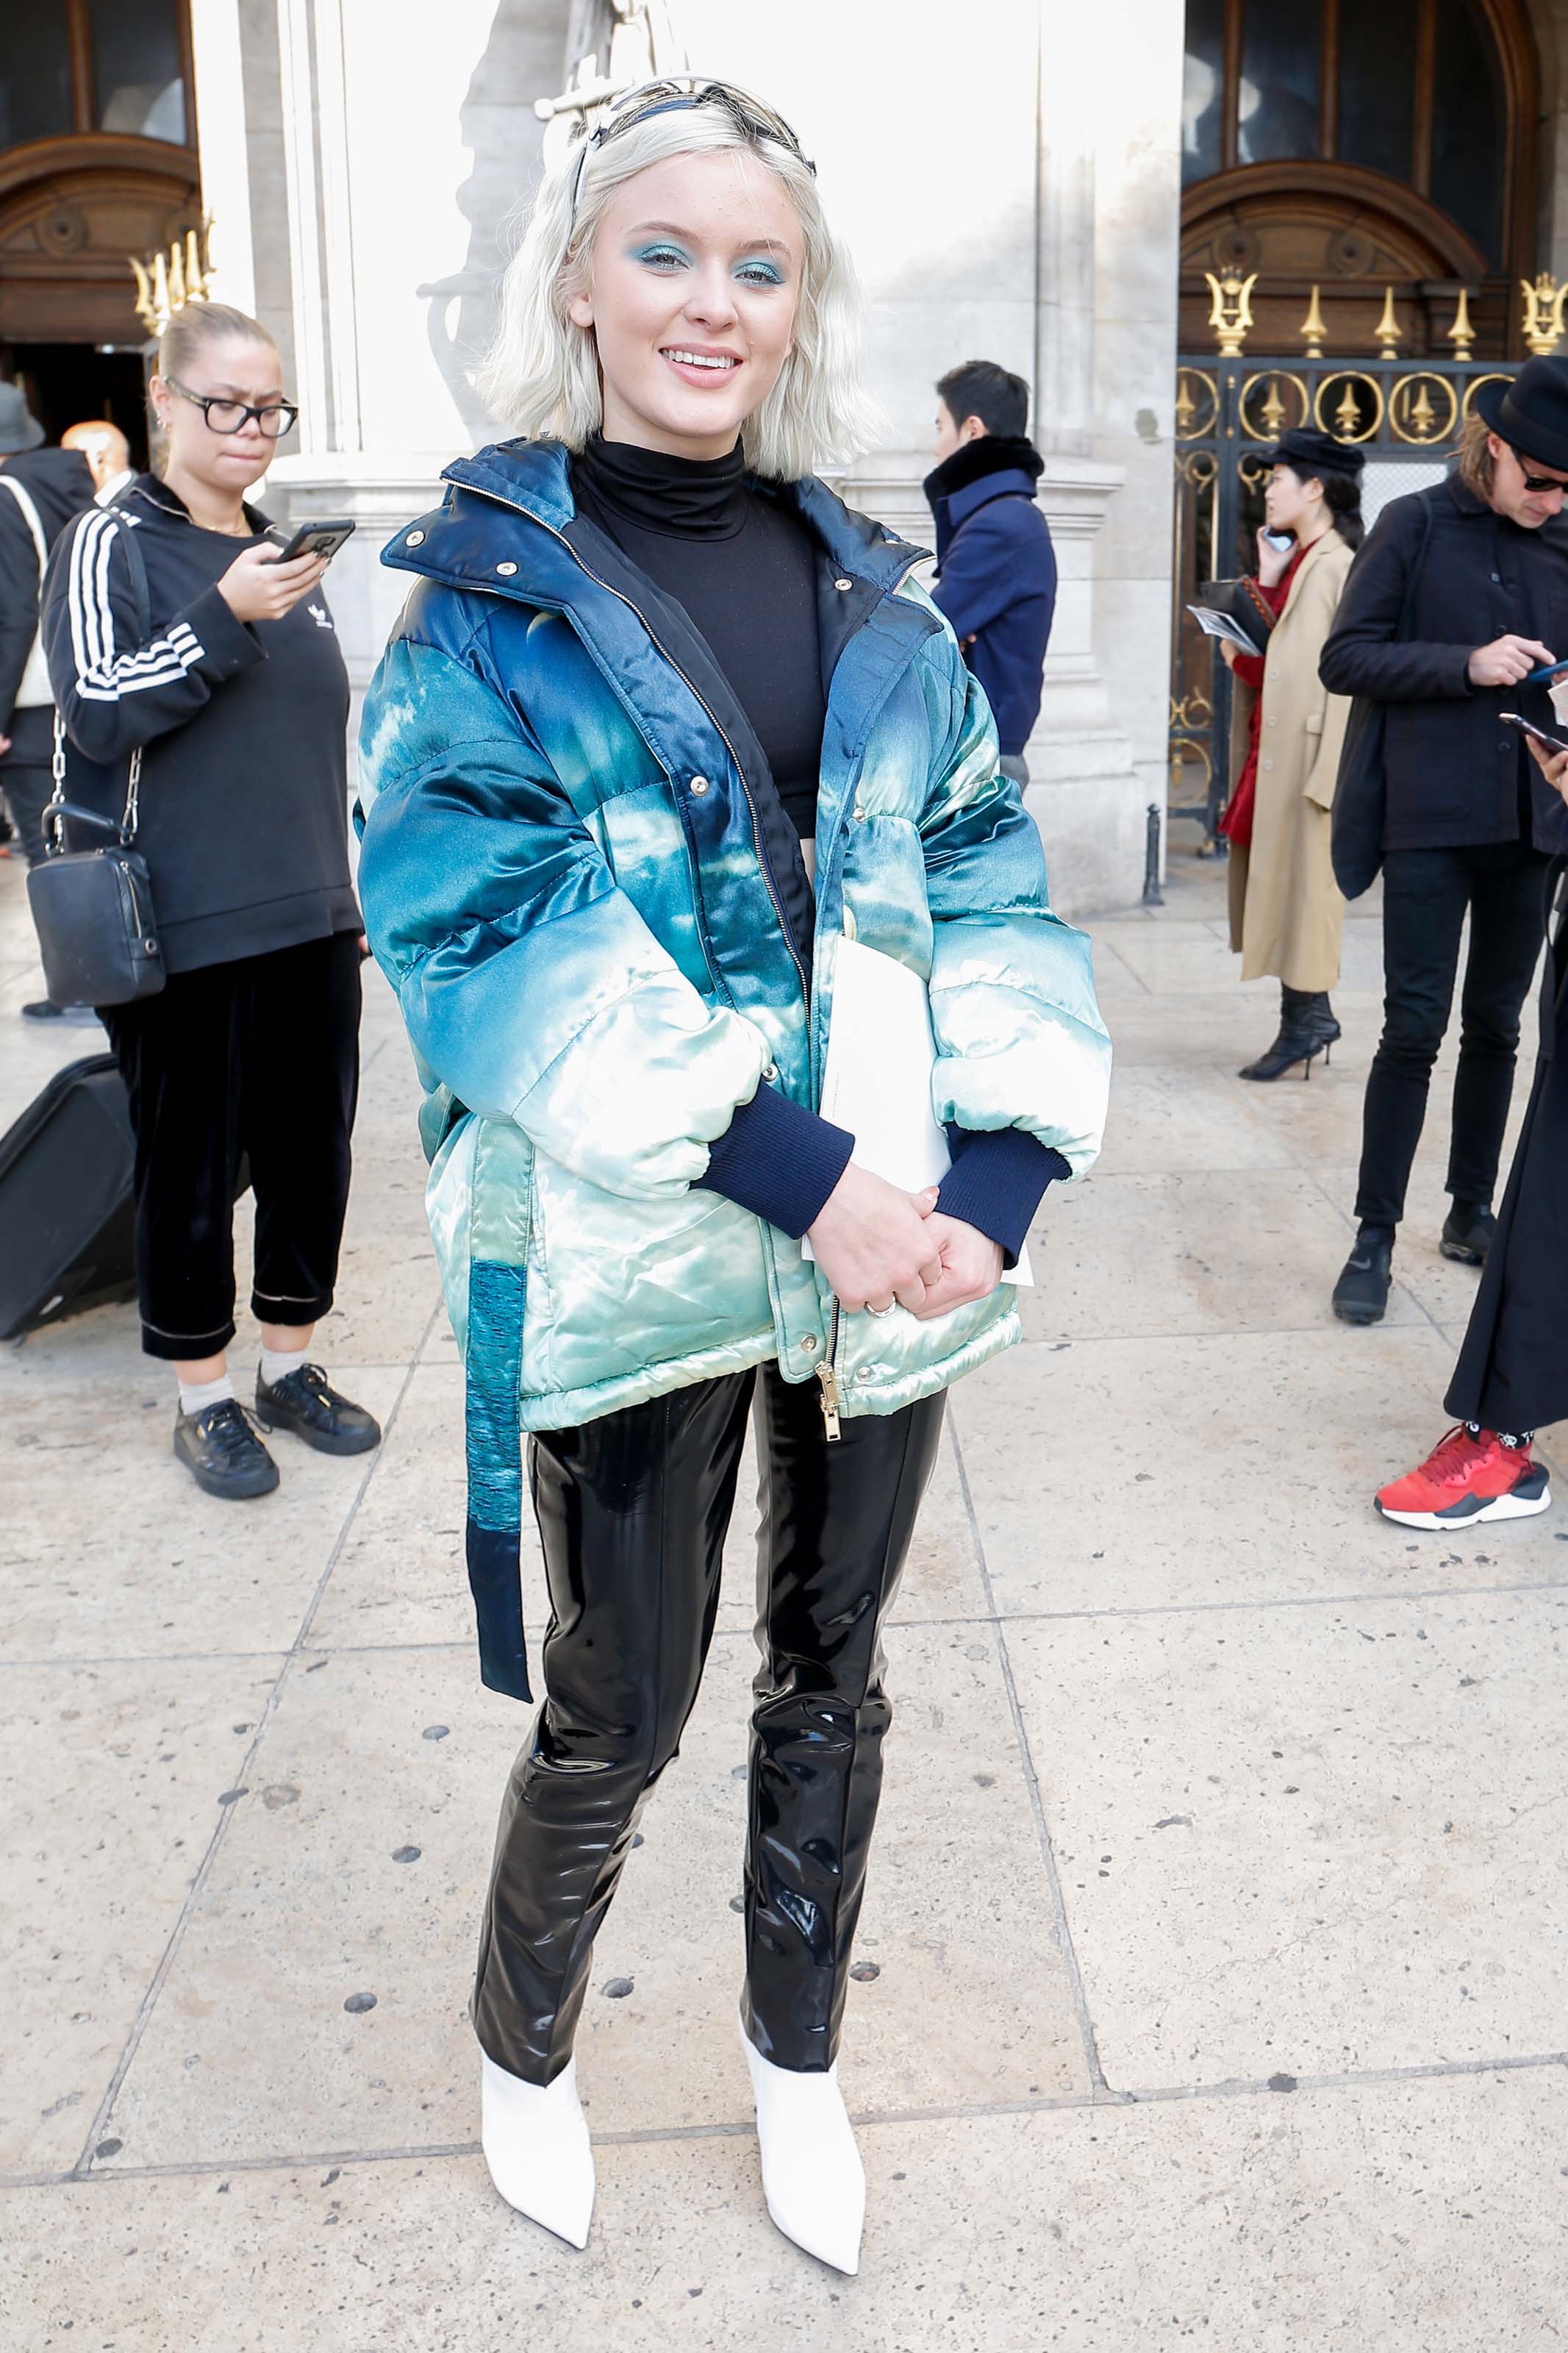 Zara Larsson attends Stella McCartney show in Paris